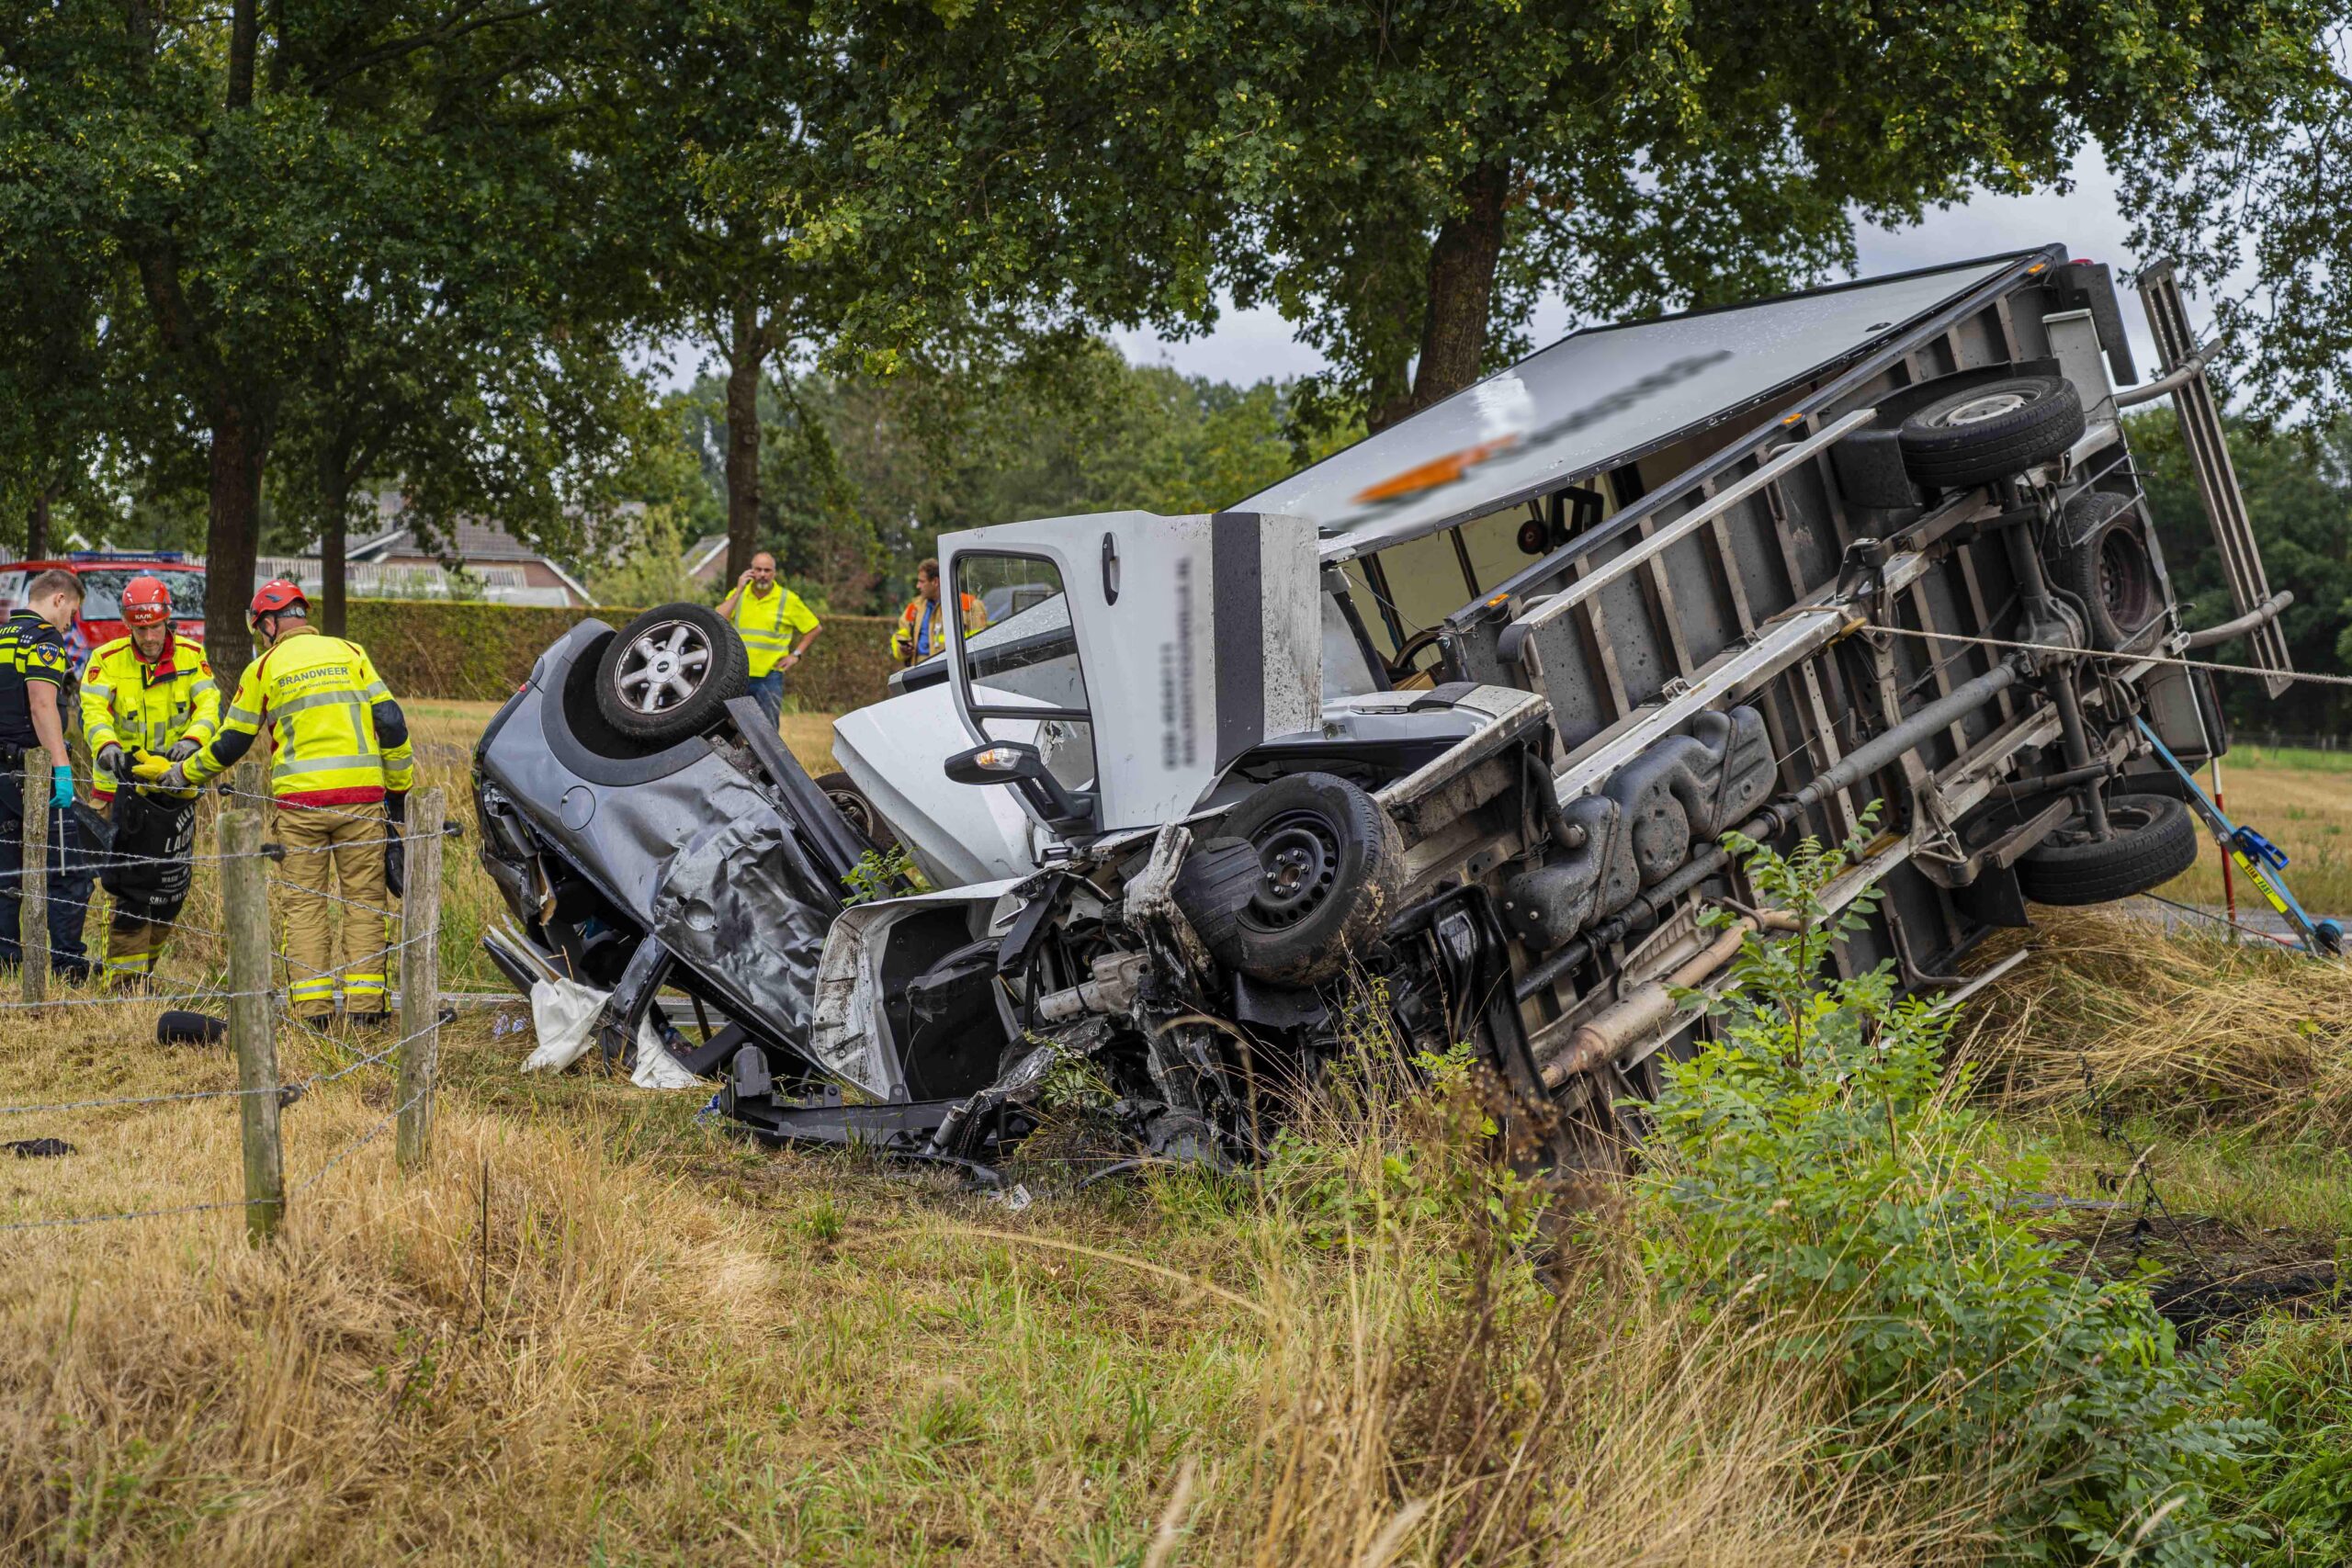 FOTOSERIE: Automobilist onder vrachtwagen bij zwaar ongeval